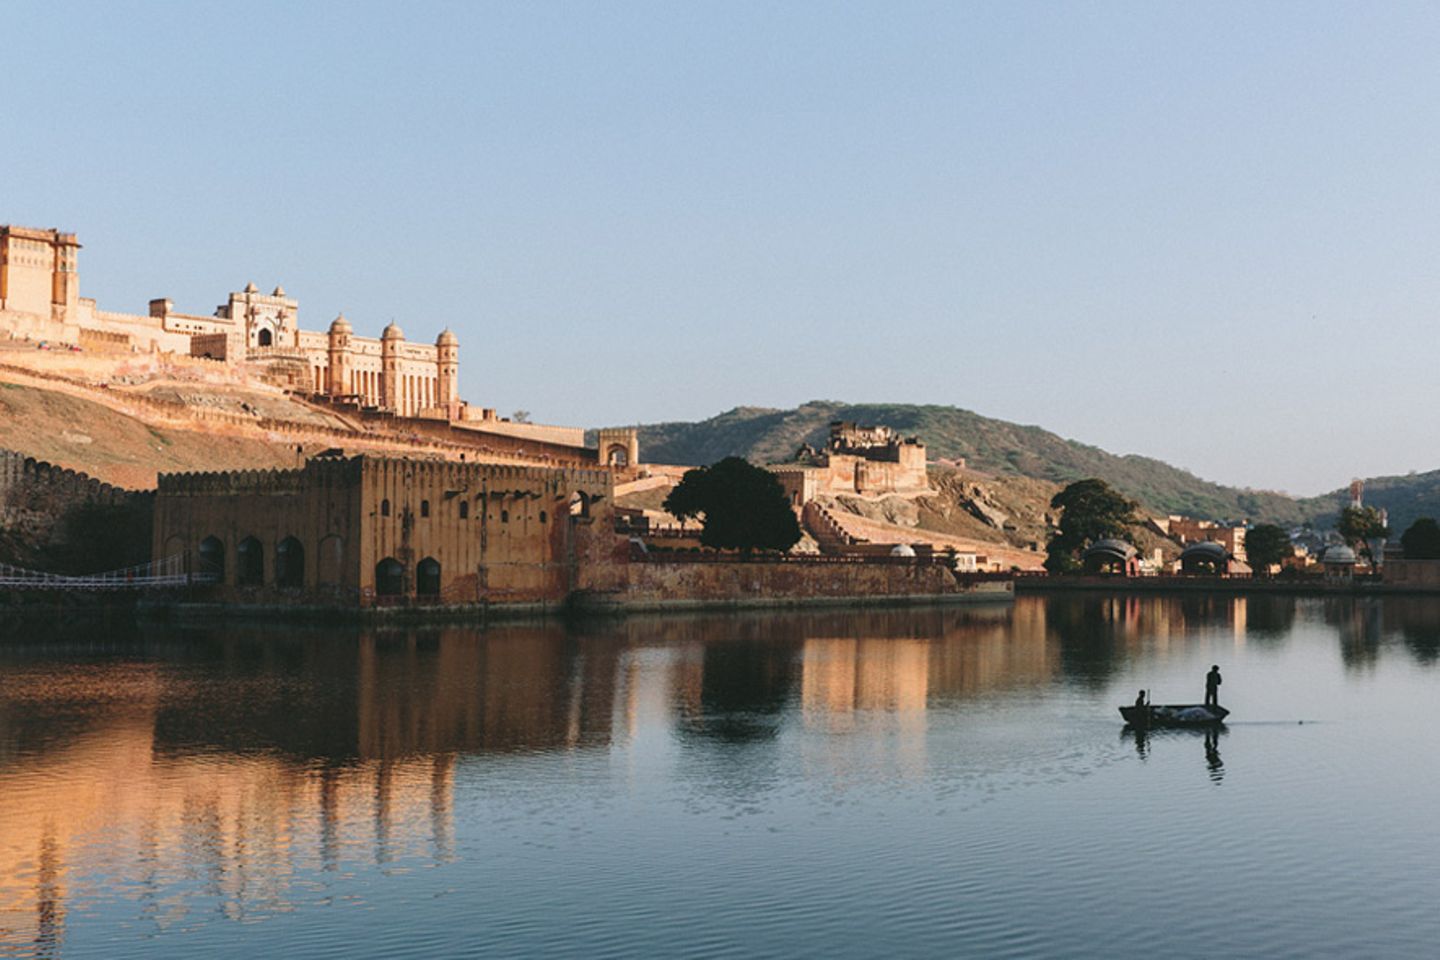 Jaipur, Indien